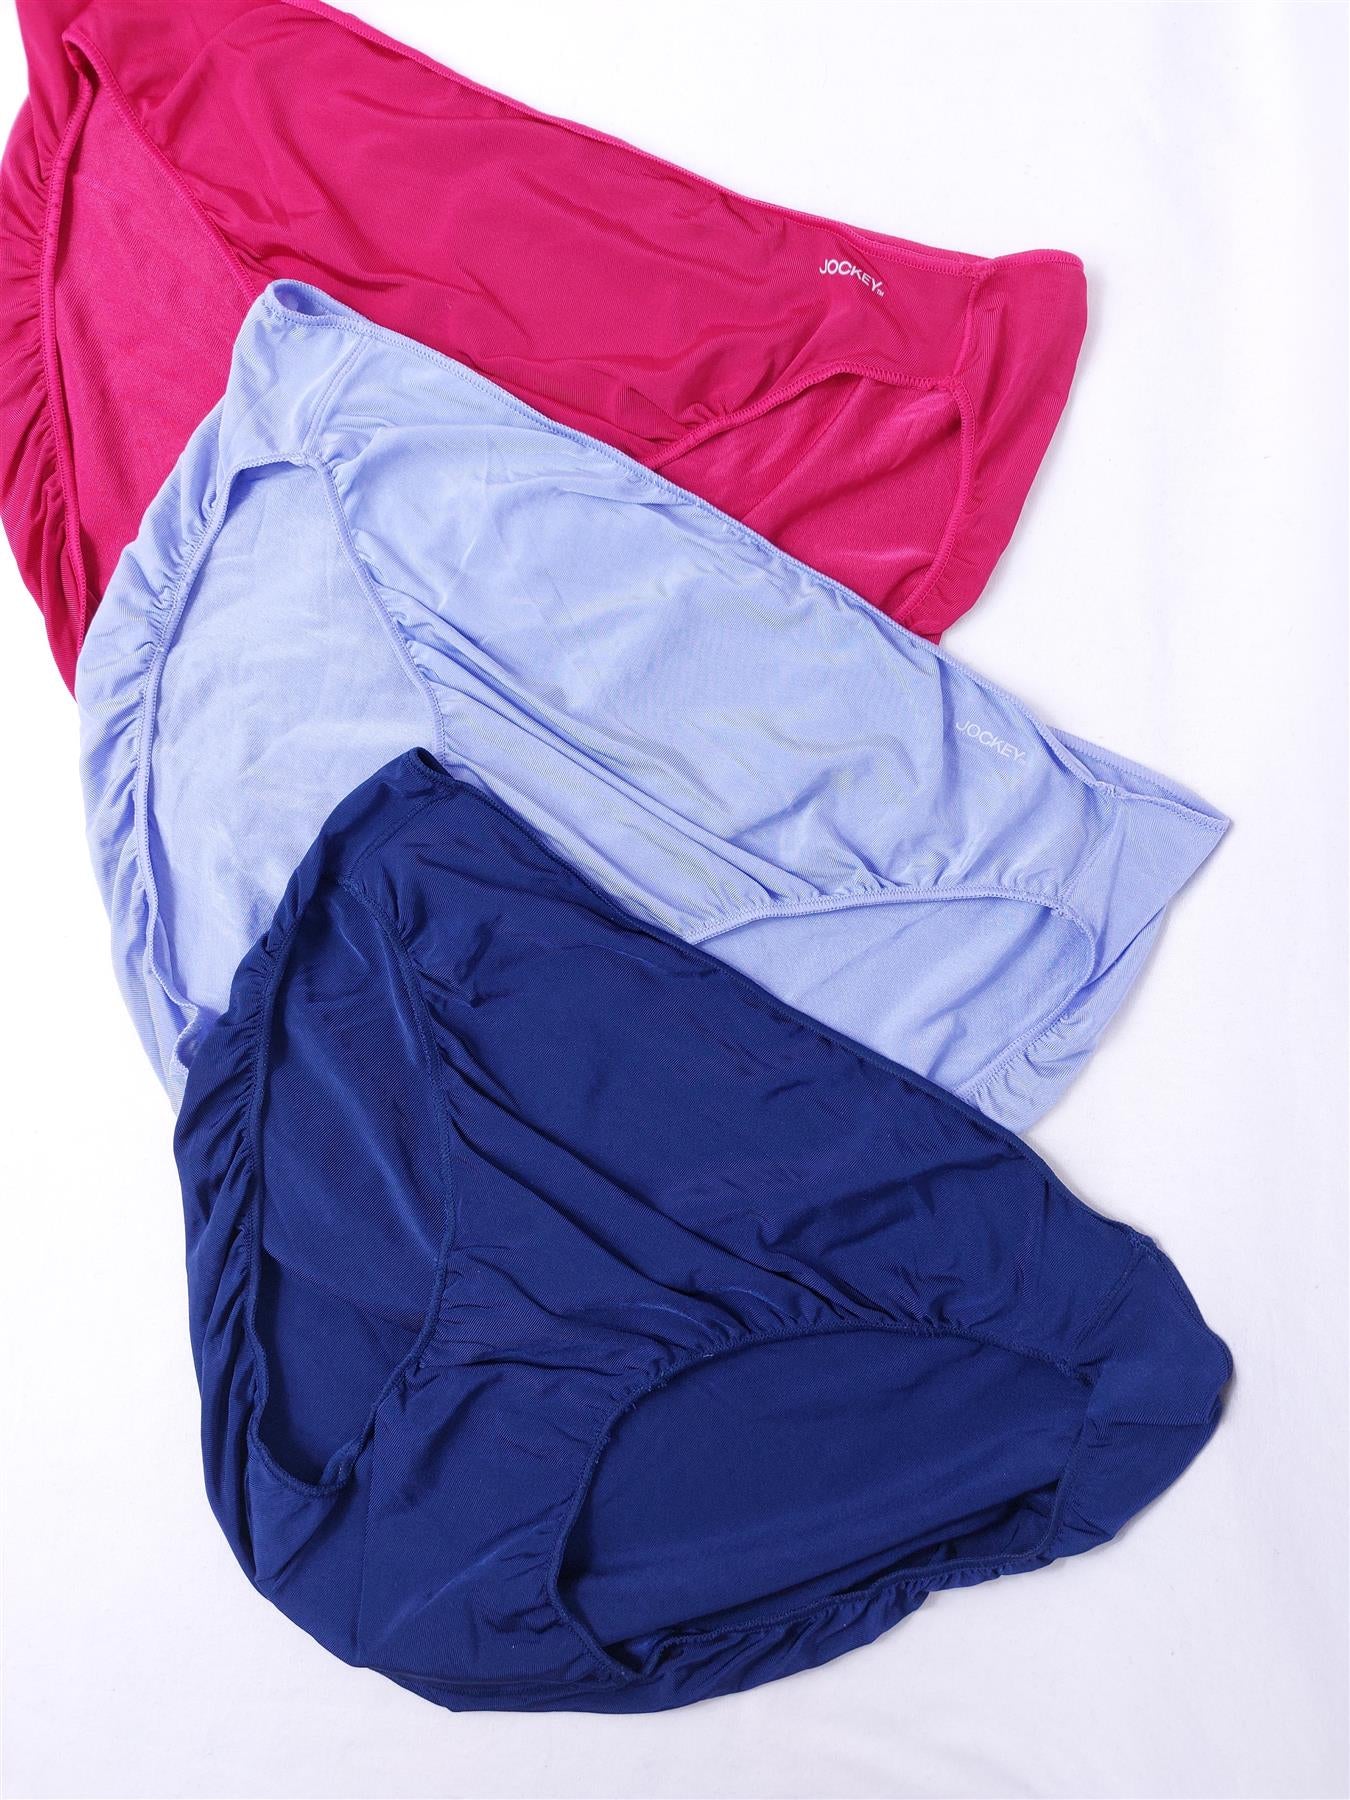 3-Pack Jockey High-Leg Knickers Women's Briefs Soft Comfort Multipack Assorted